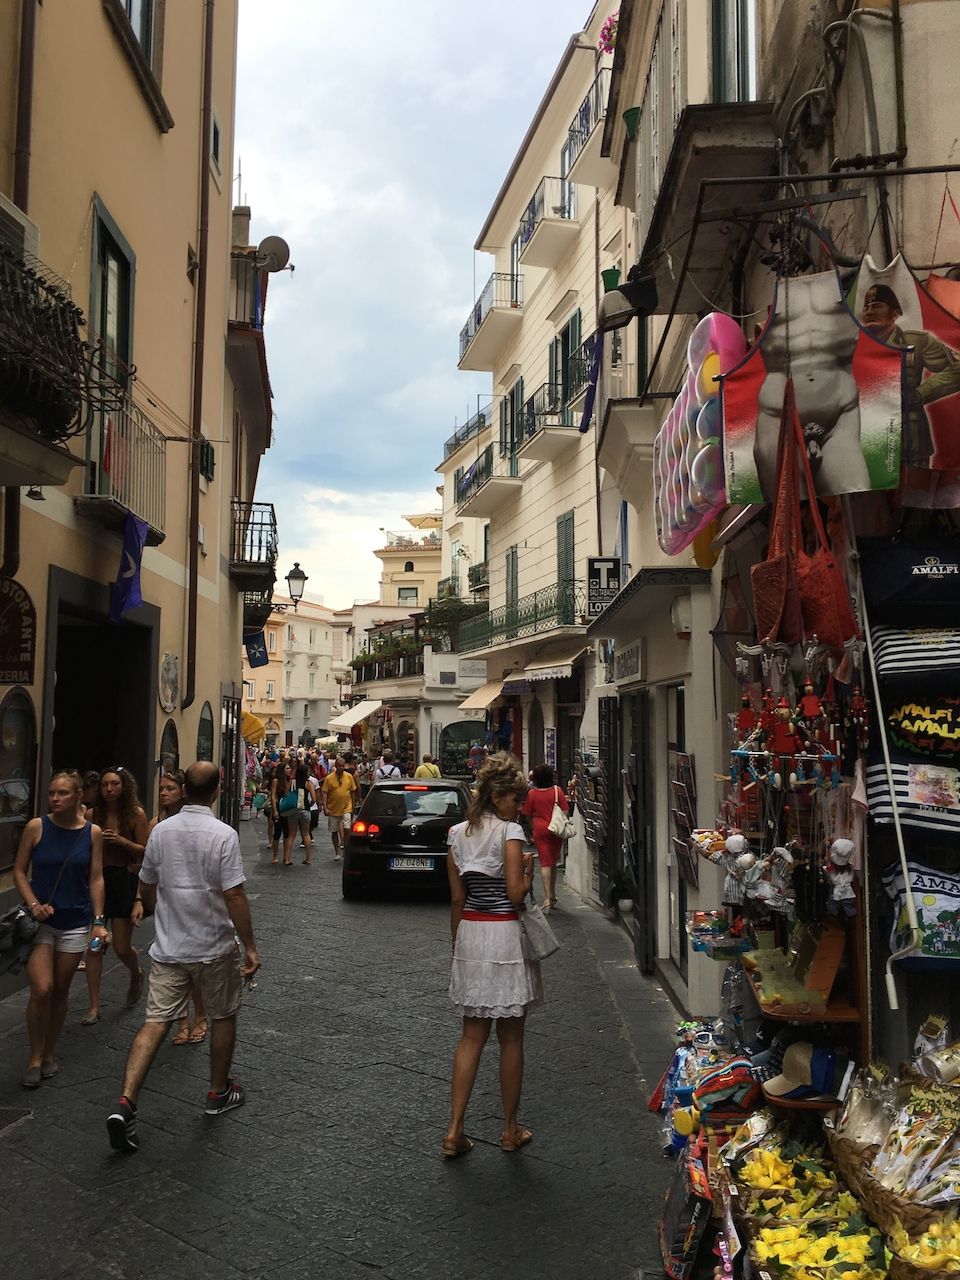 and finally Amalfi